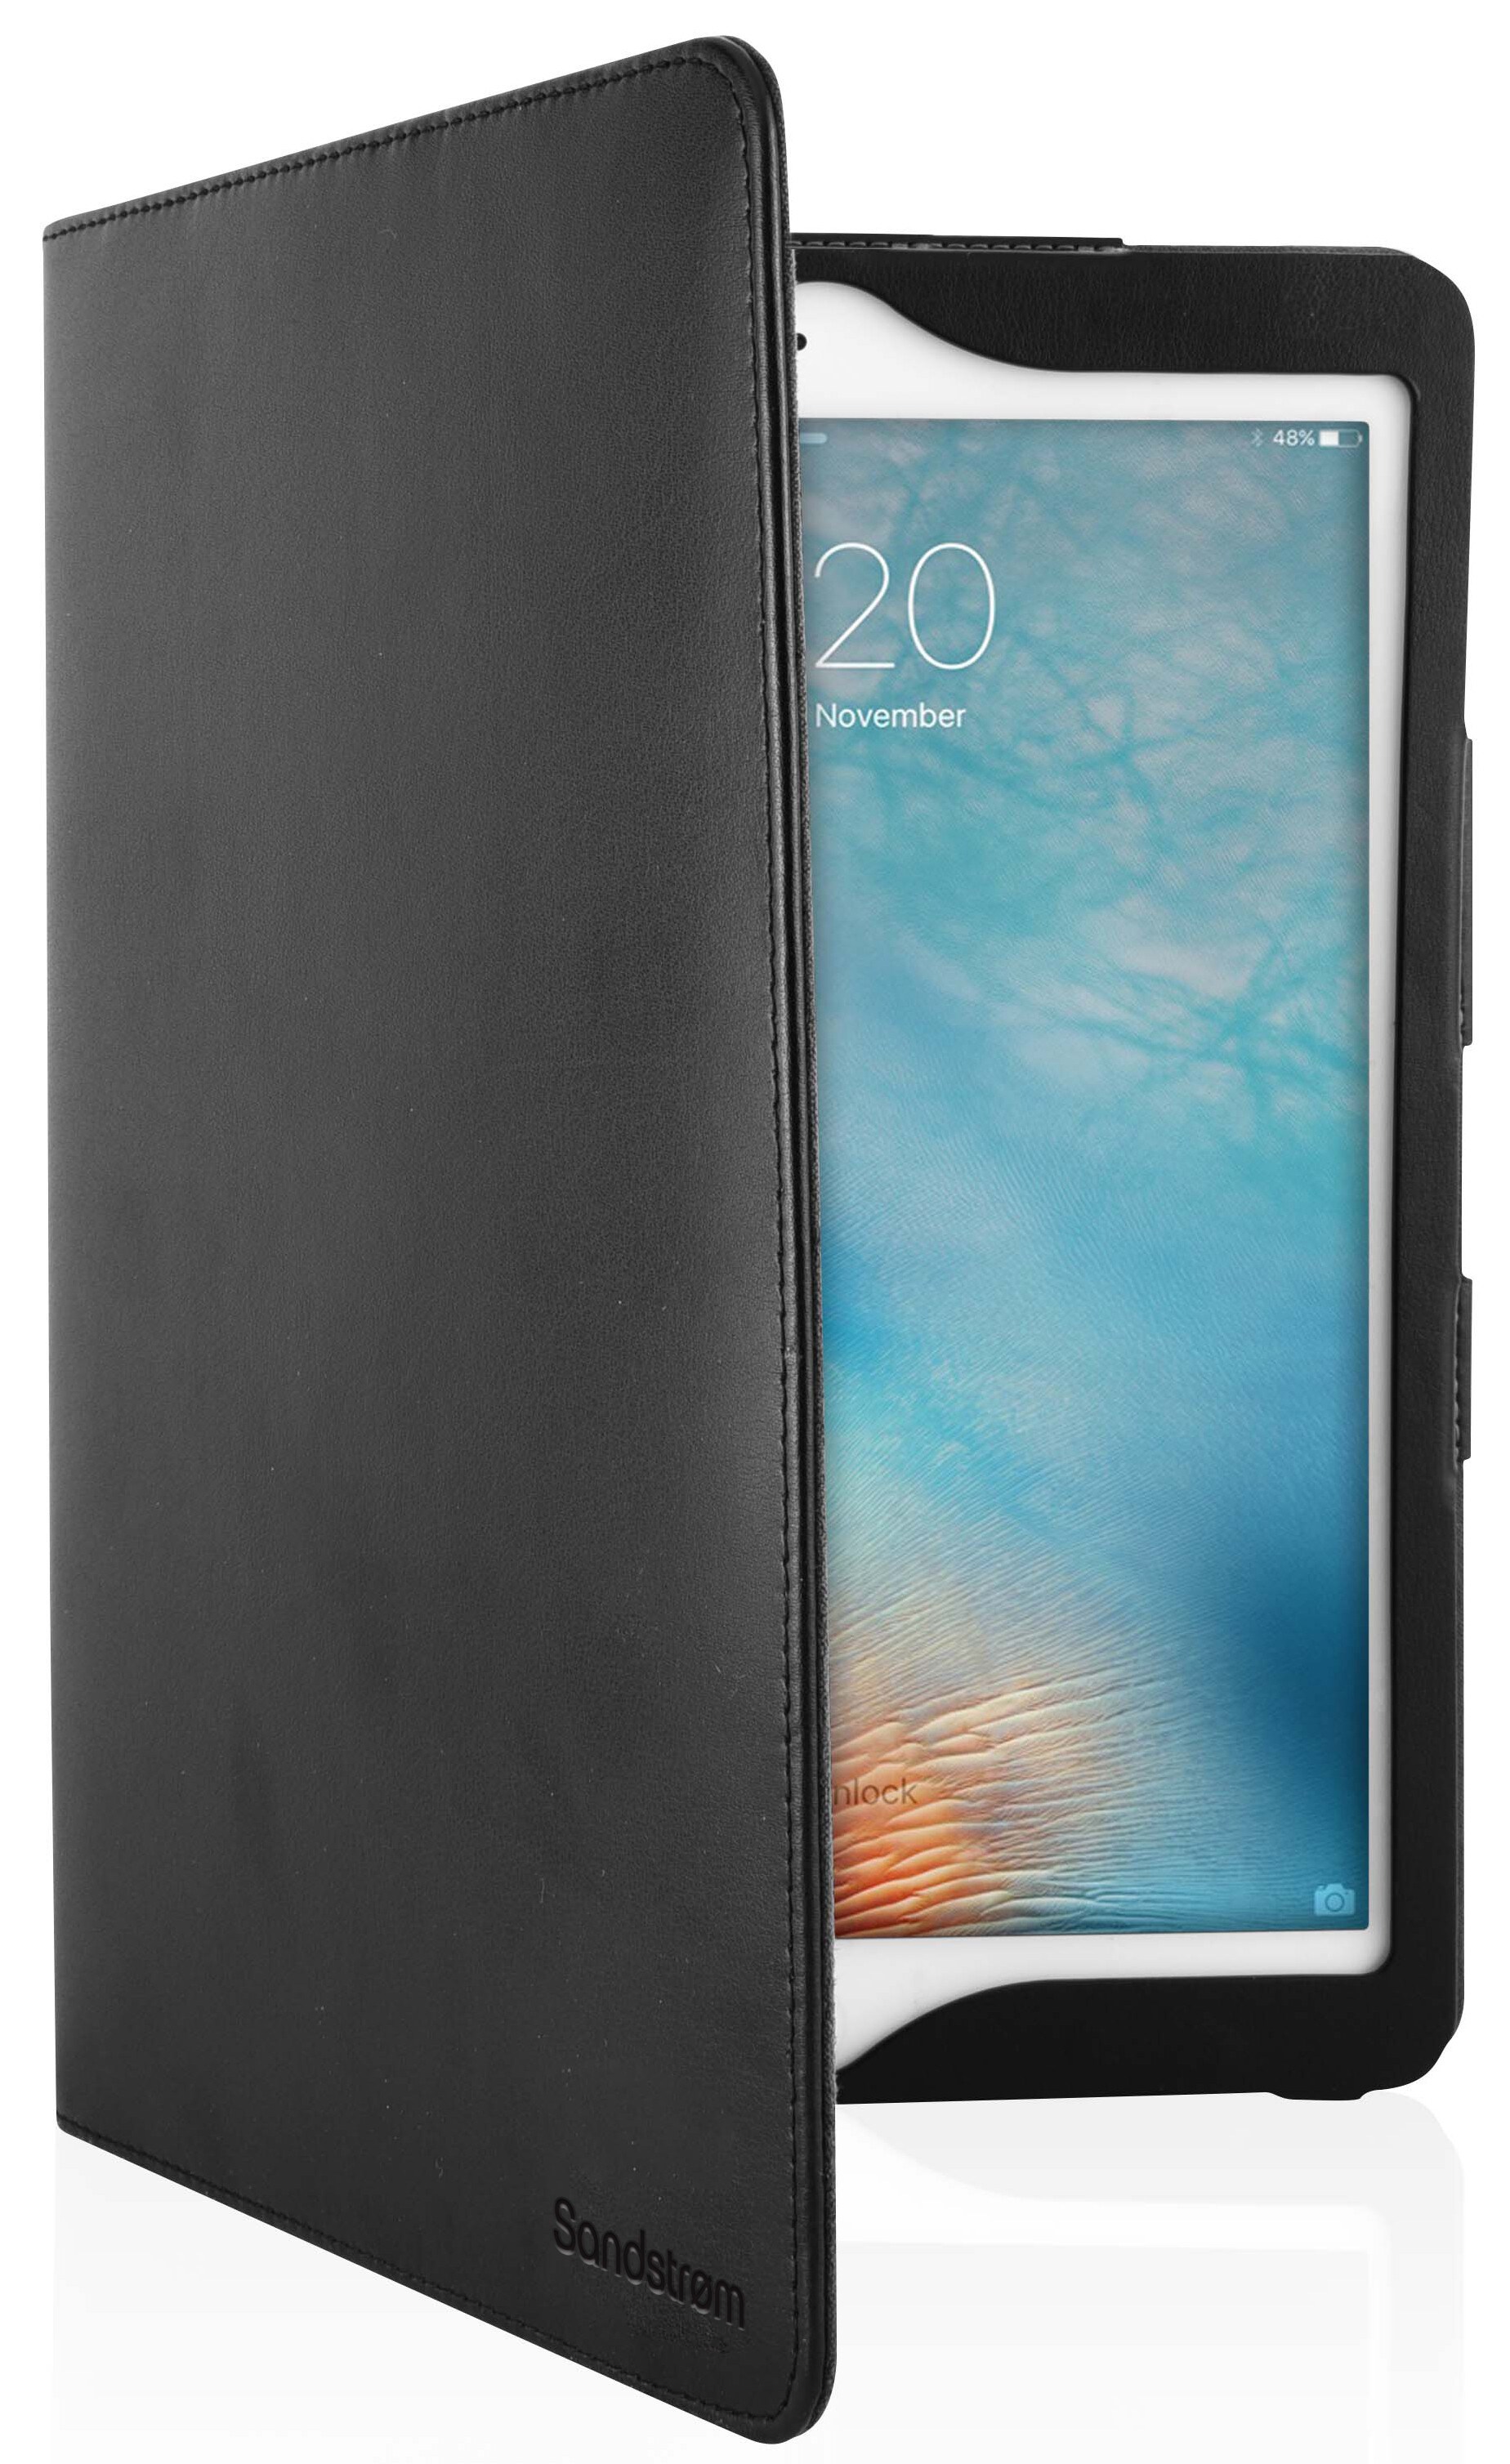 Sandstrøm iPad ProAir 10.5 skinnetui (sort) Tilbehør